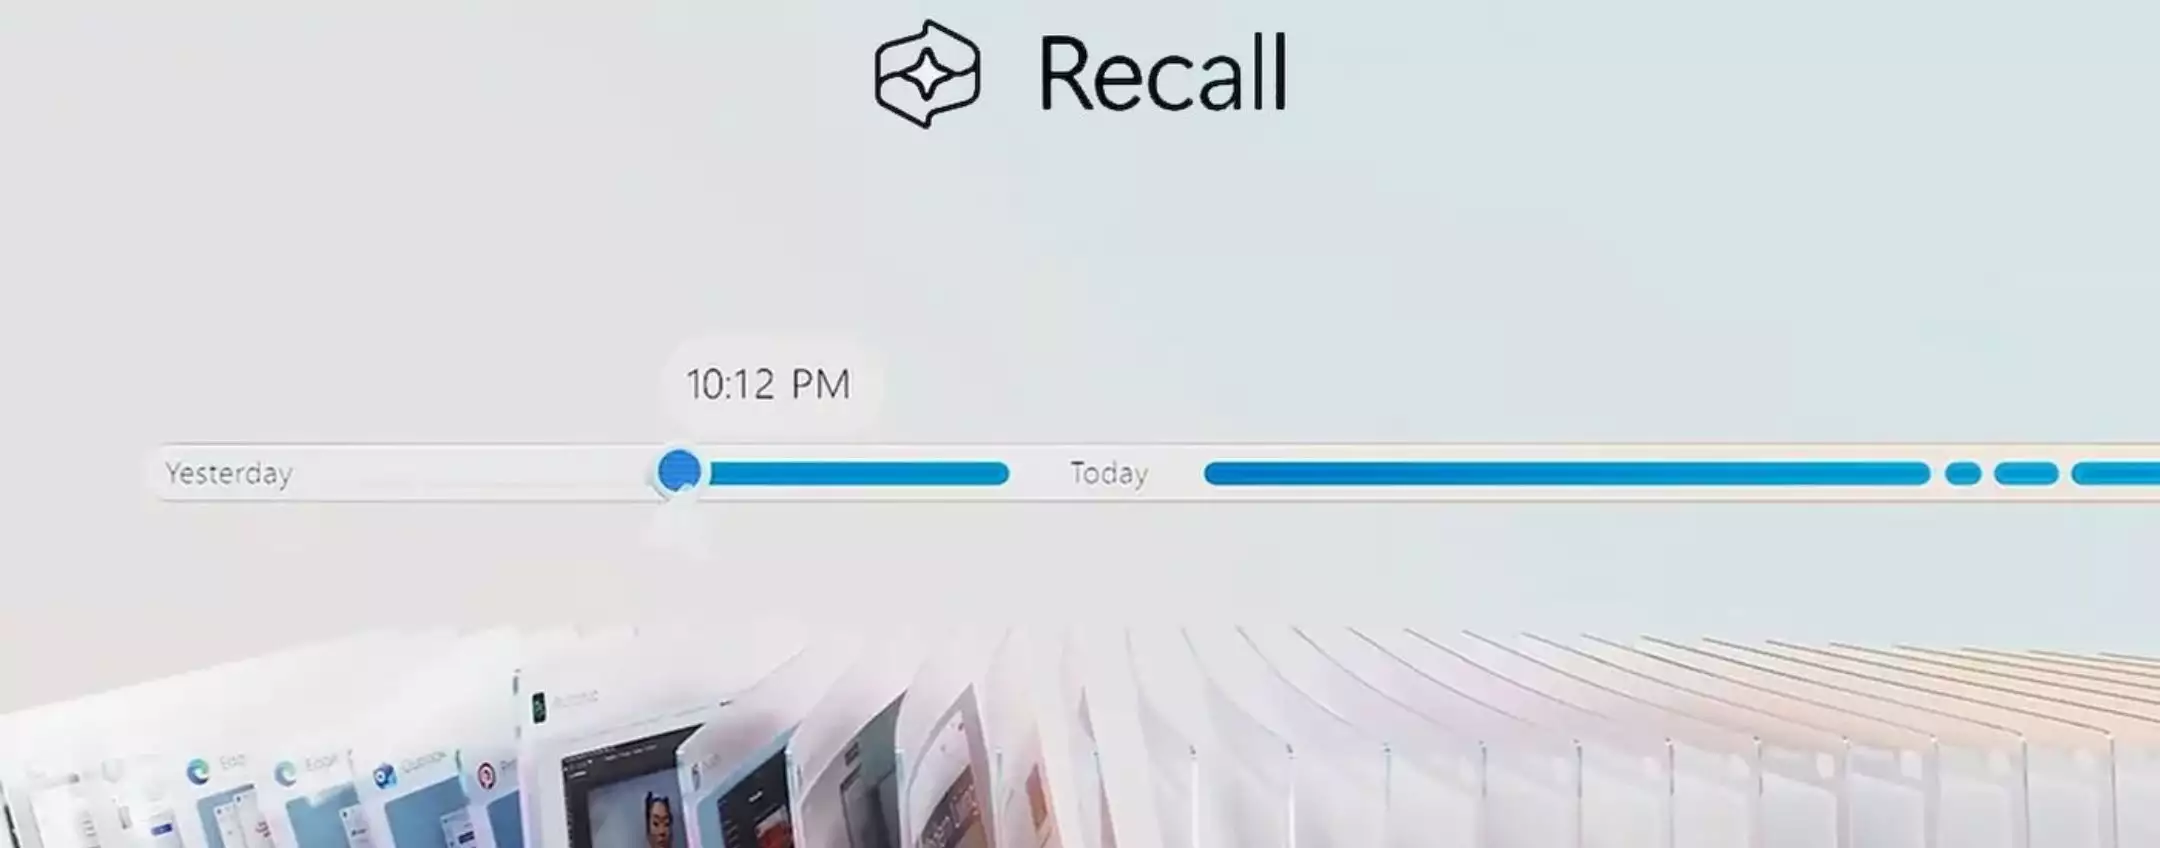 Recall aggiunge Screenray nonostante le critiche